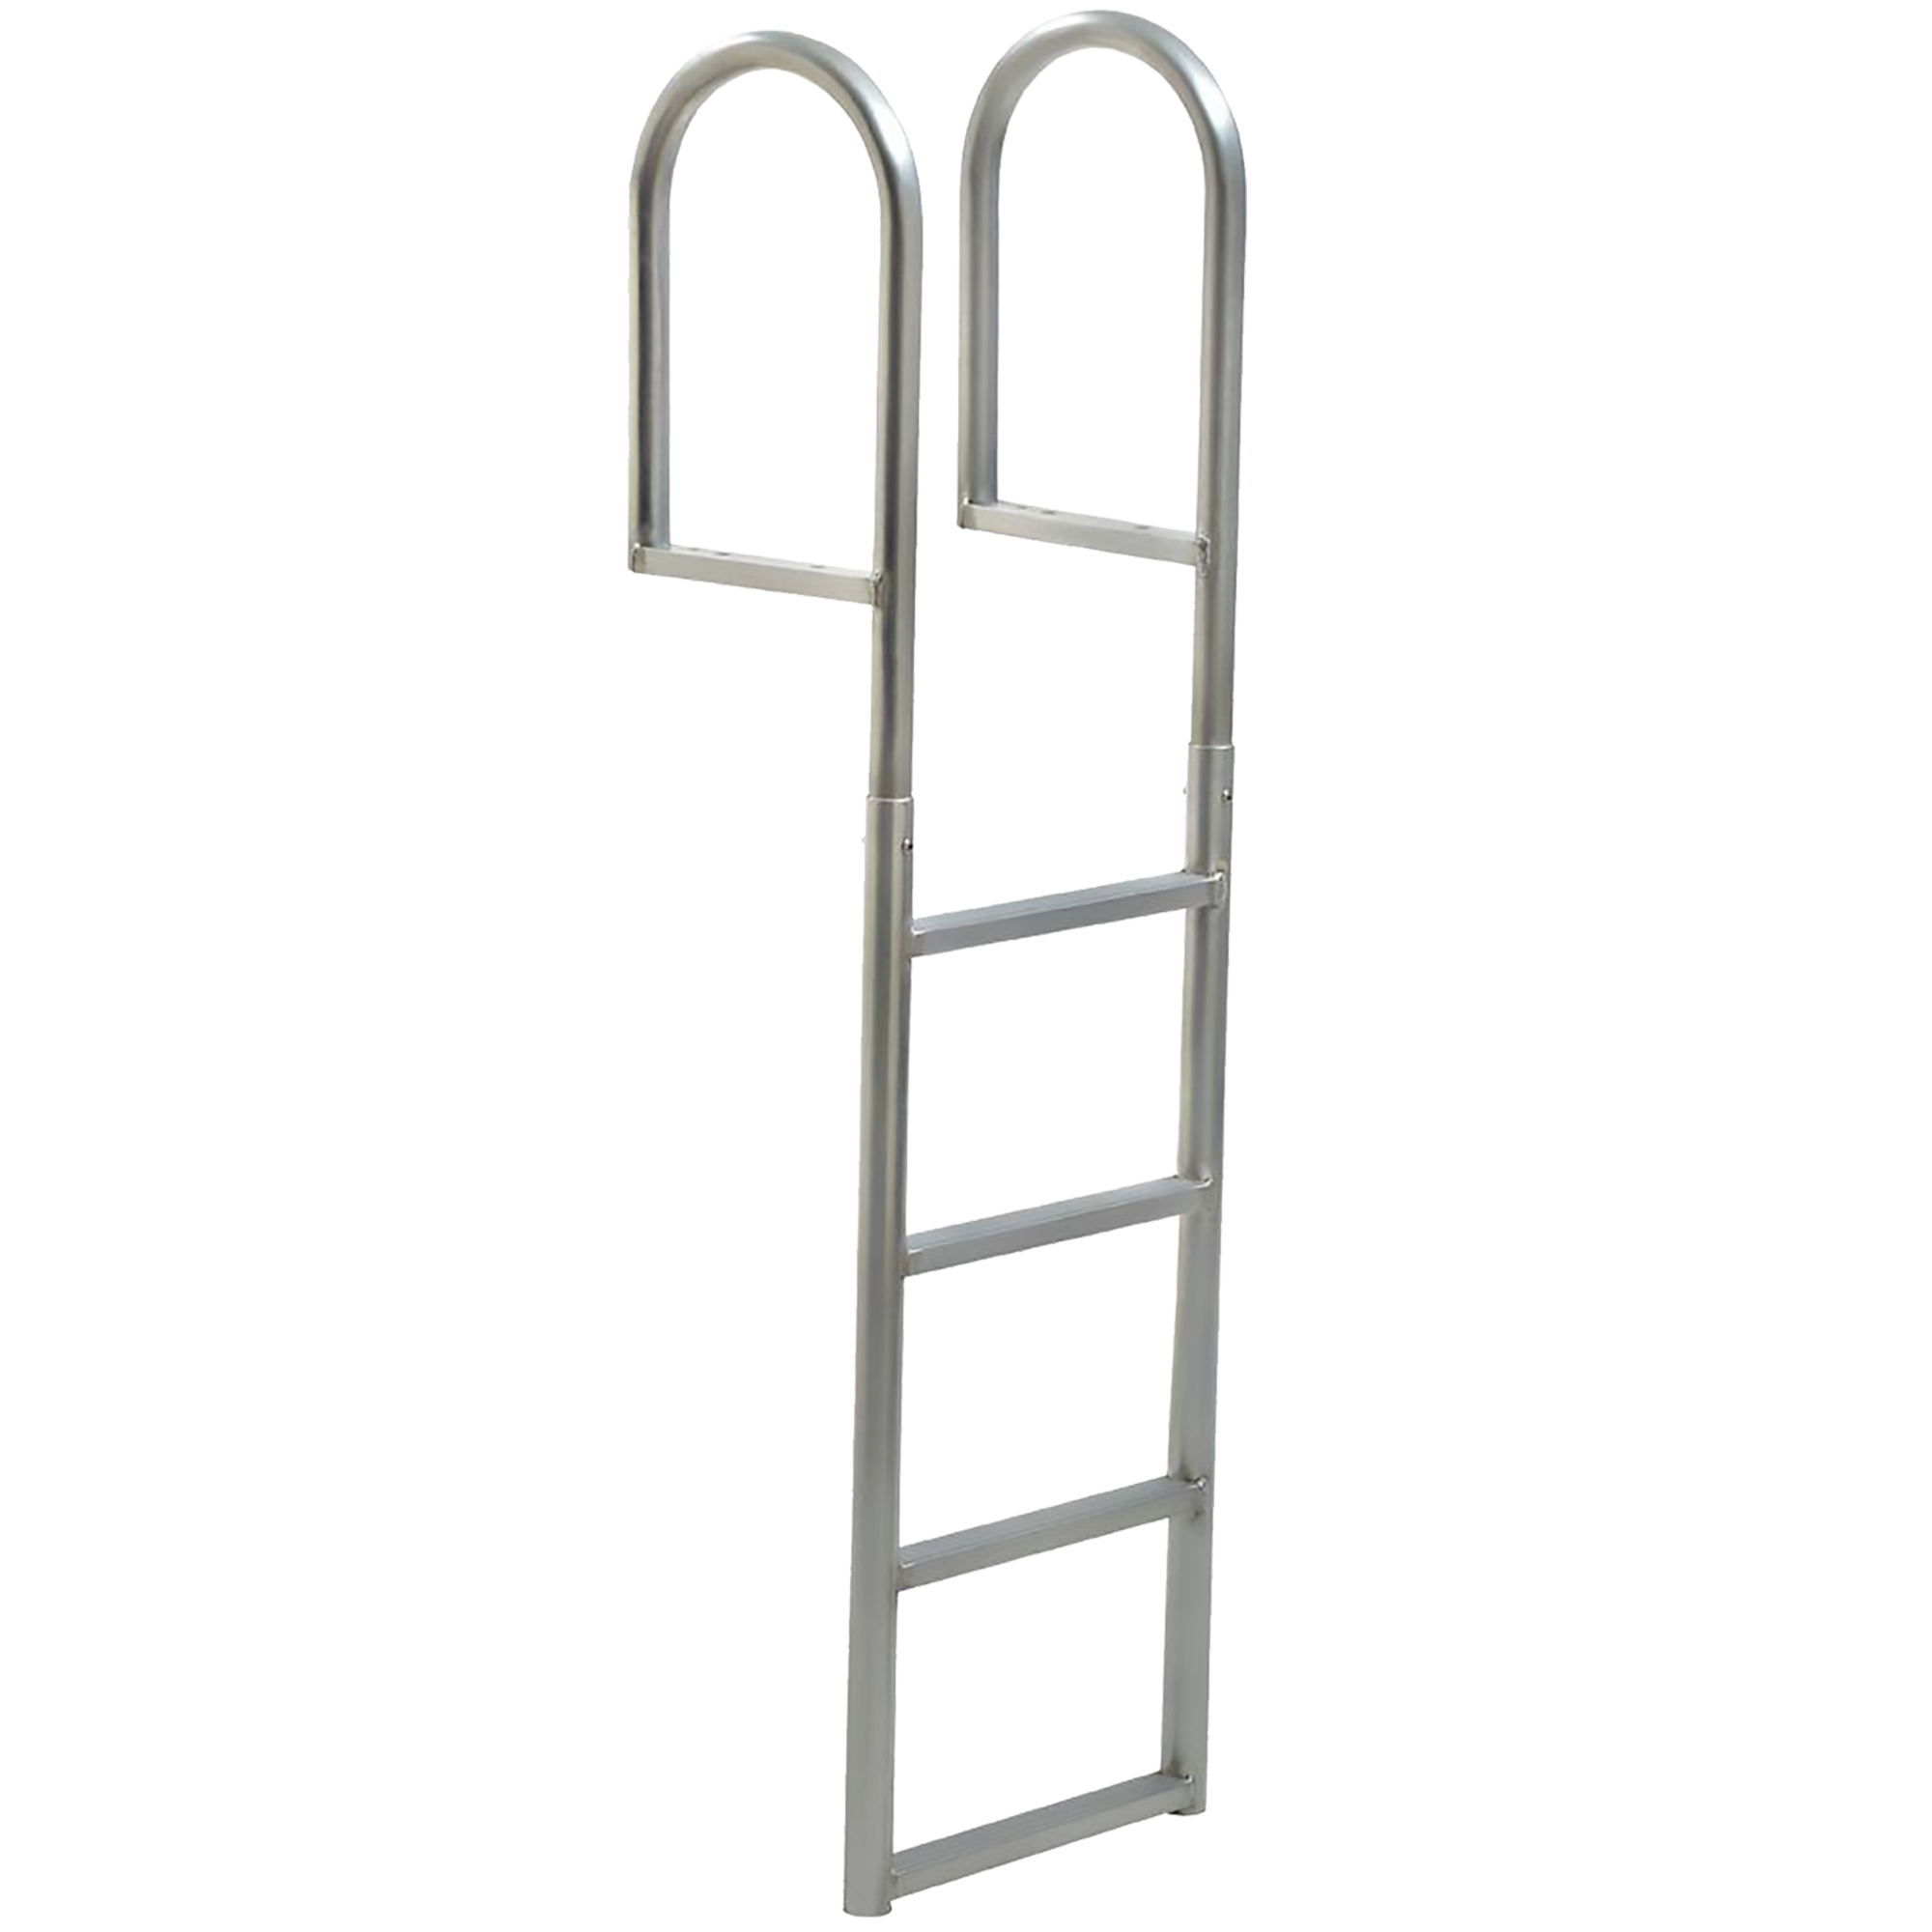 4 Rung Aluminum Ladder - Standard 2" Wide Step